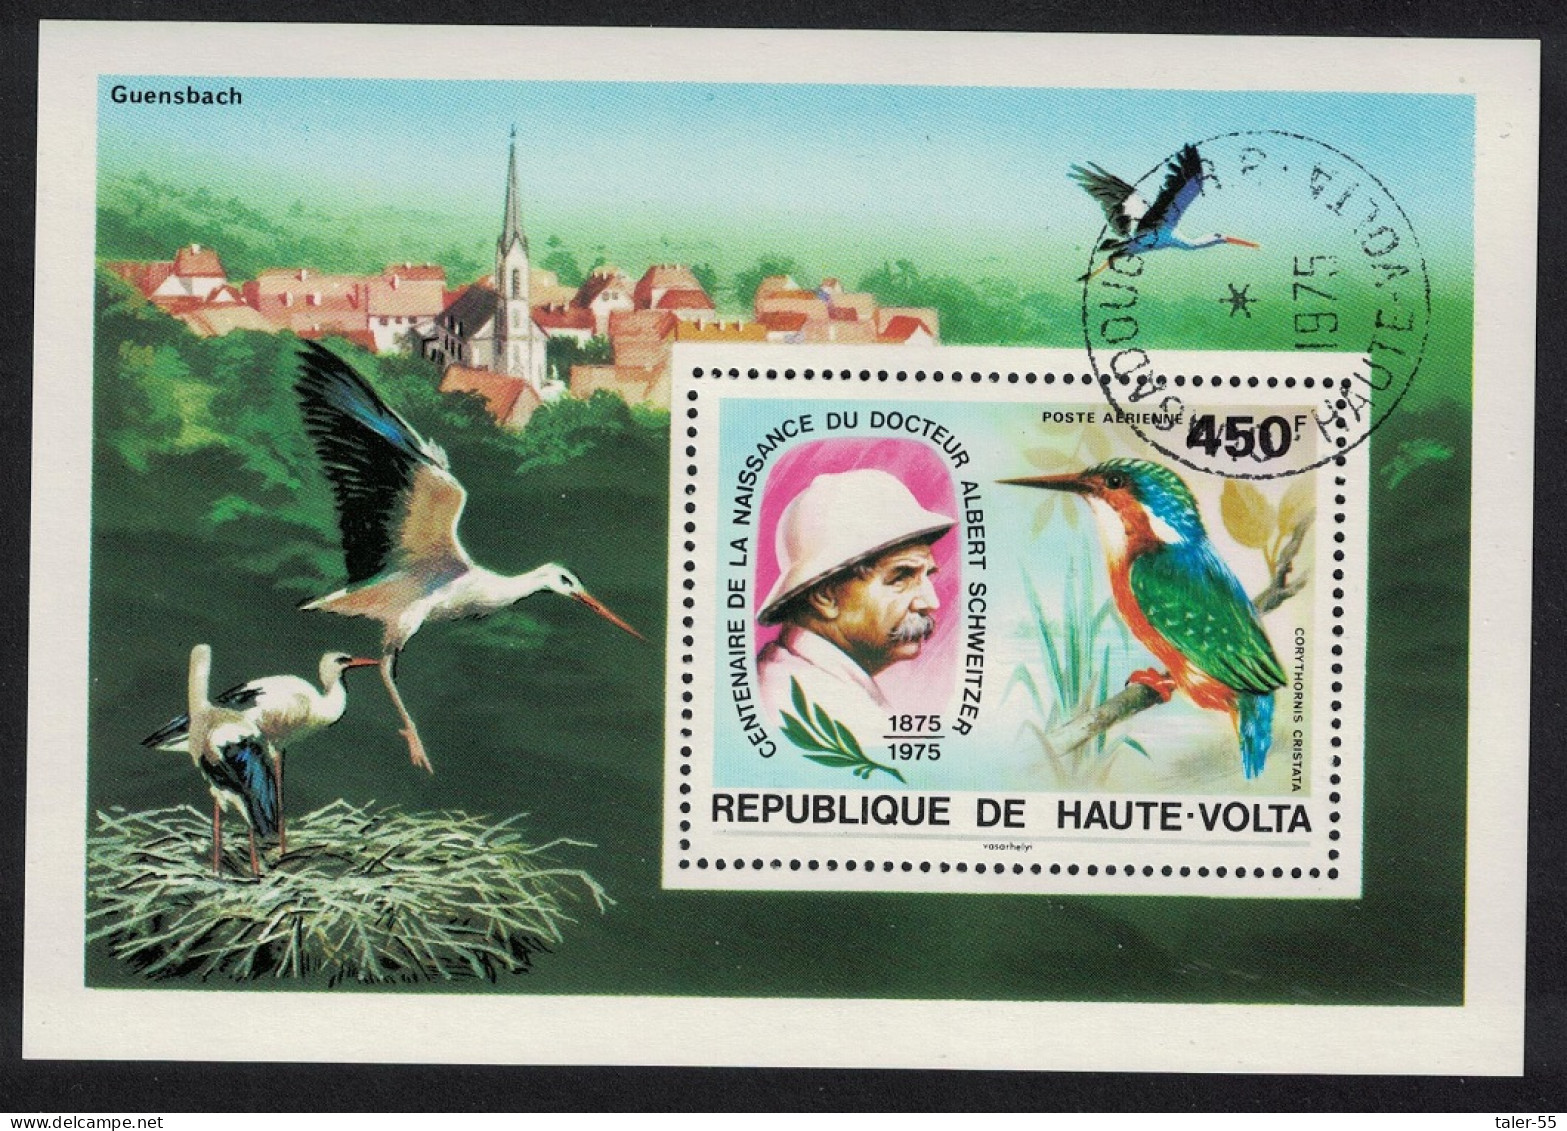 Upper Volta Stork Kingfisher Birds Dr Albert Schweitzer MS 1975 CTO MI#Block 35 Sc#C214 - Obervolta (1958-1984)